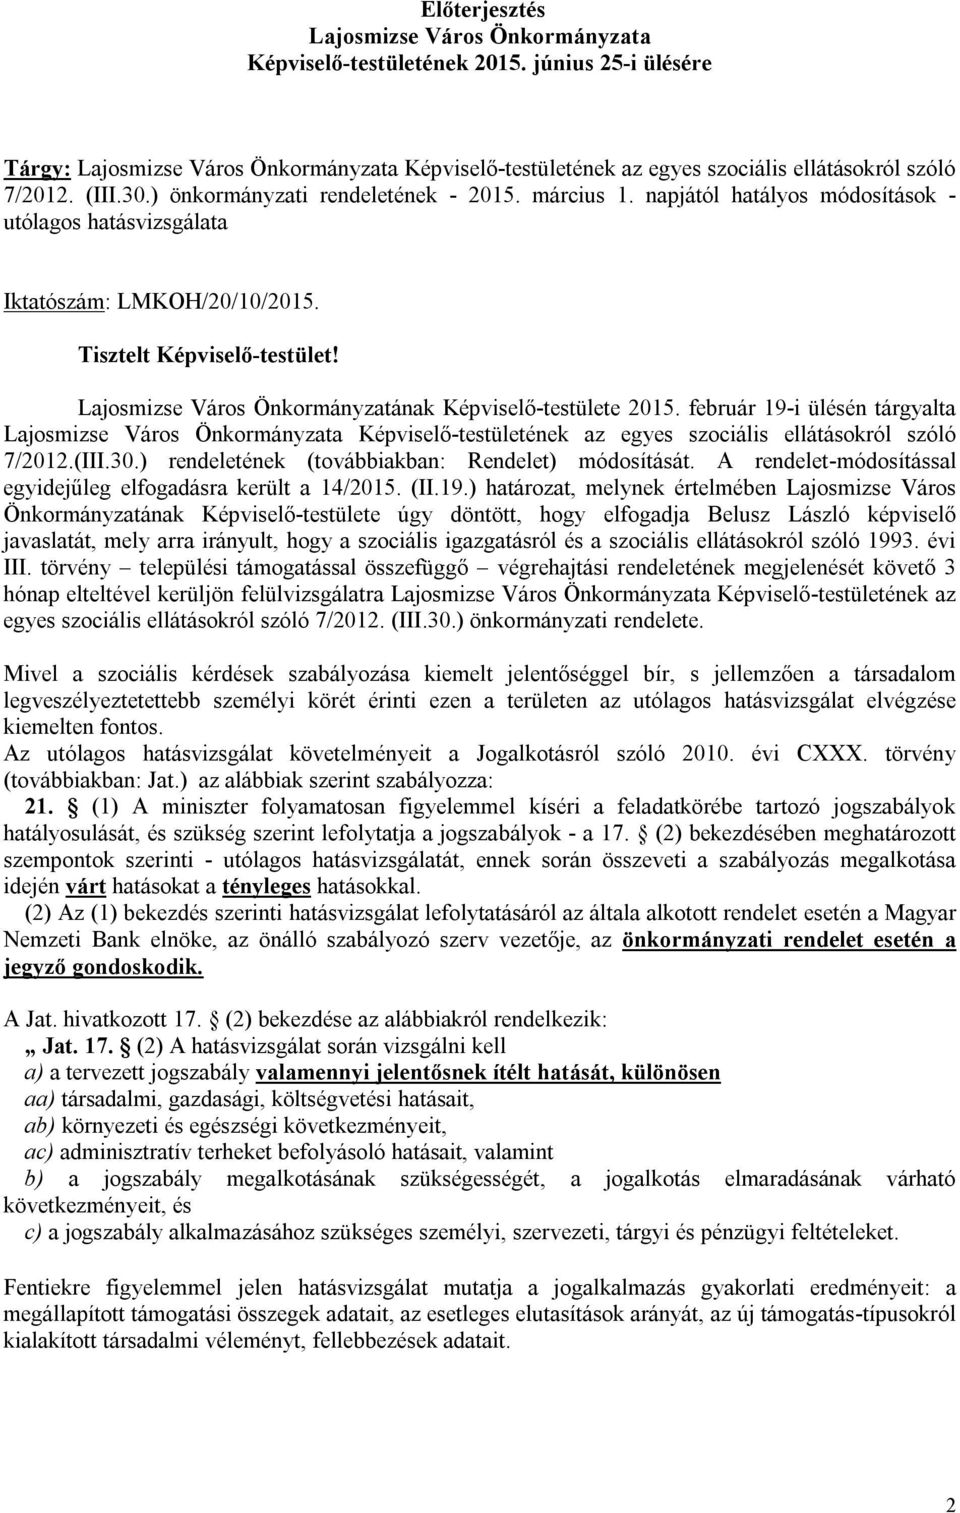 Lajosmizse Város Önkormányzatának Képviselő-testülete 2015. február 19-i ülésén tárgyalta Lajosmizse Város Önkormányzata Képviselő-testületének az egyes szociális ellátásokról szóló 7/2012.(III.30.